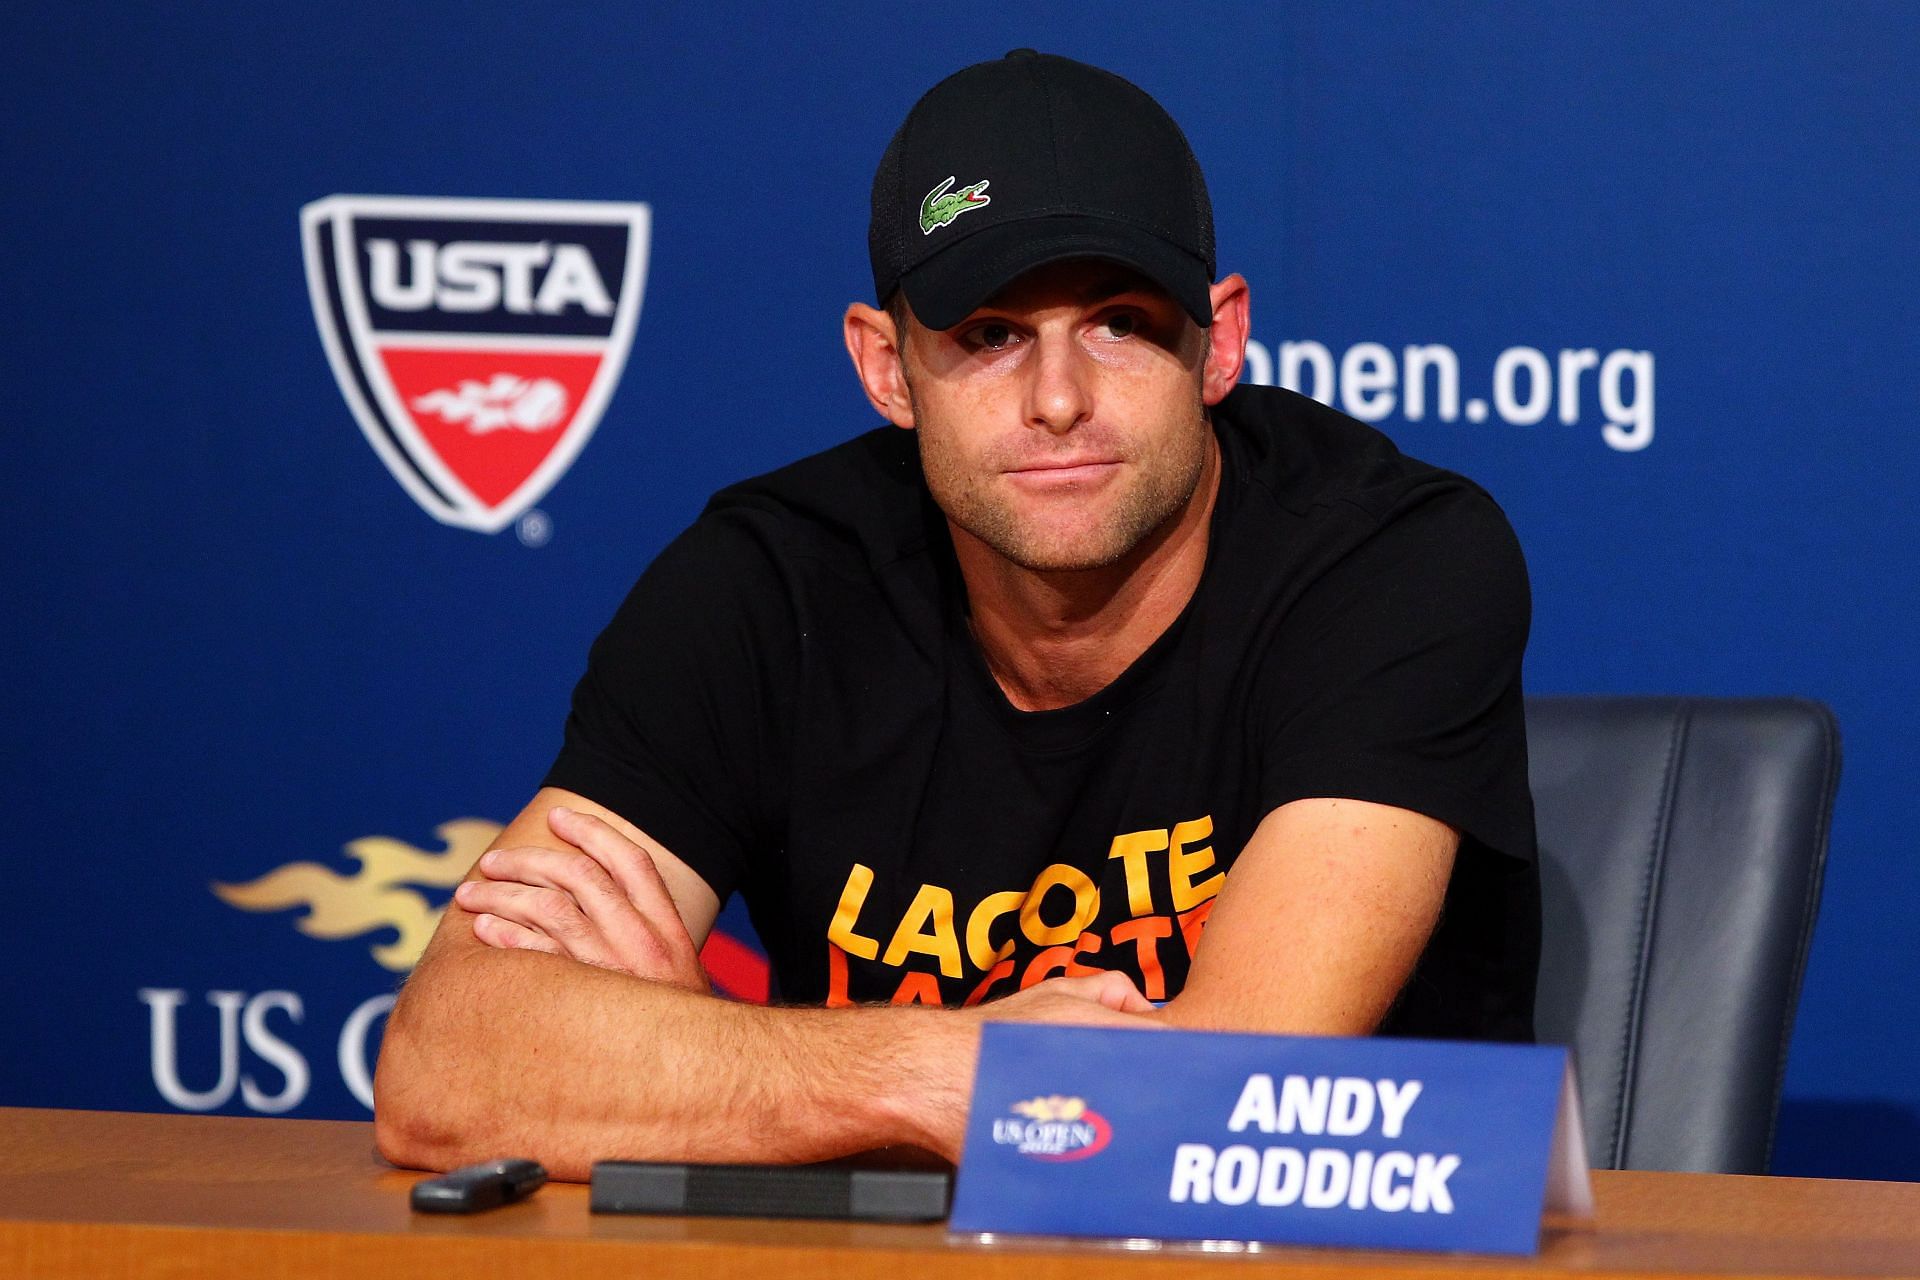 Andy Roddick talking at a press conference